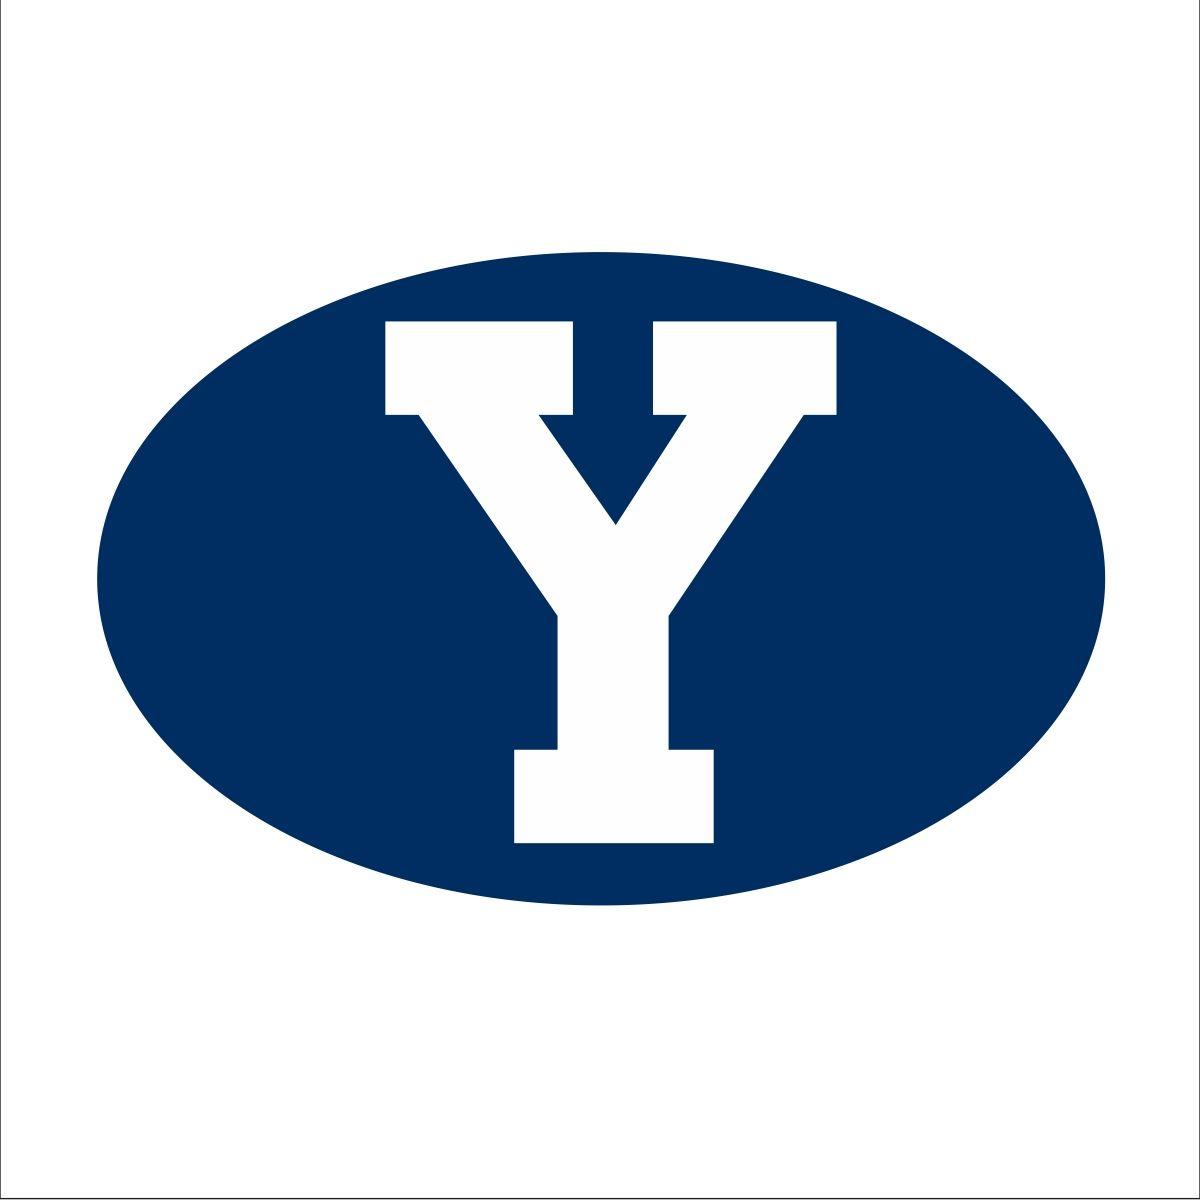 BYU Y Logo - BYU 1960s Logos - The Daily Universe